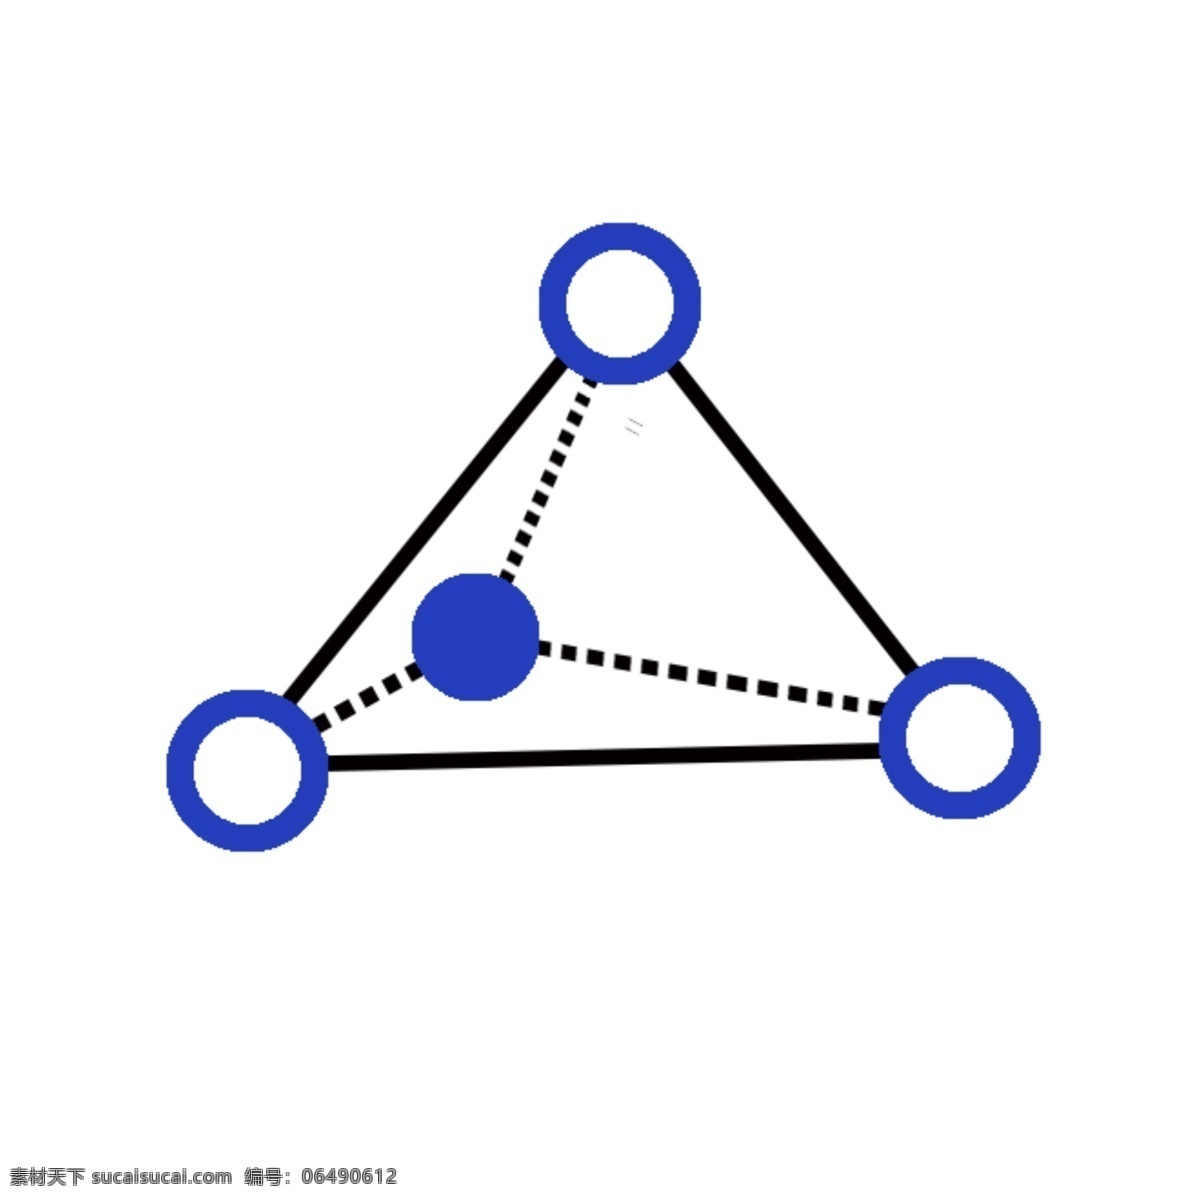 蓝色 三角形 圆点 几何 基因工程 元素 矢量图 创意 卡通 图标